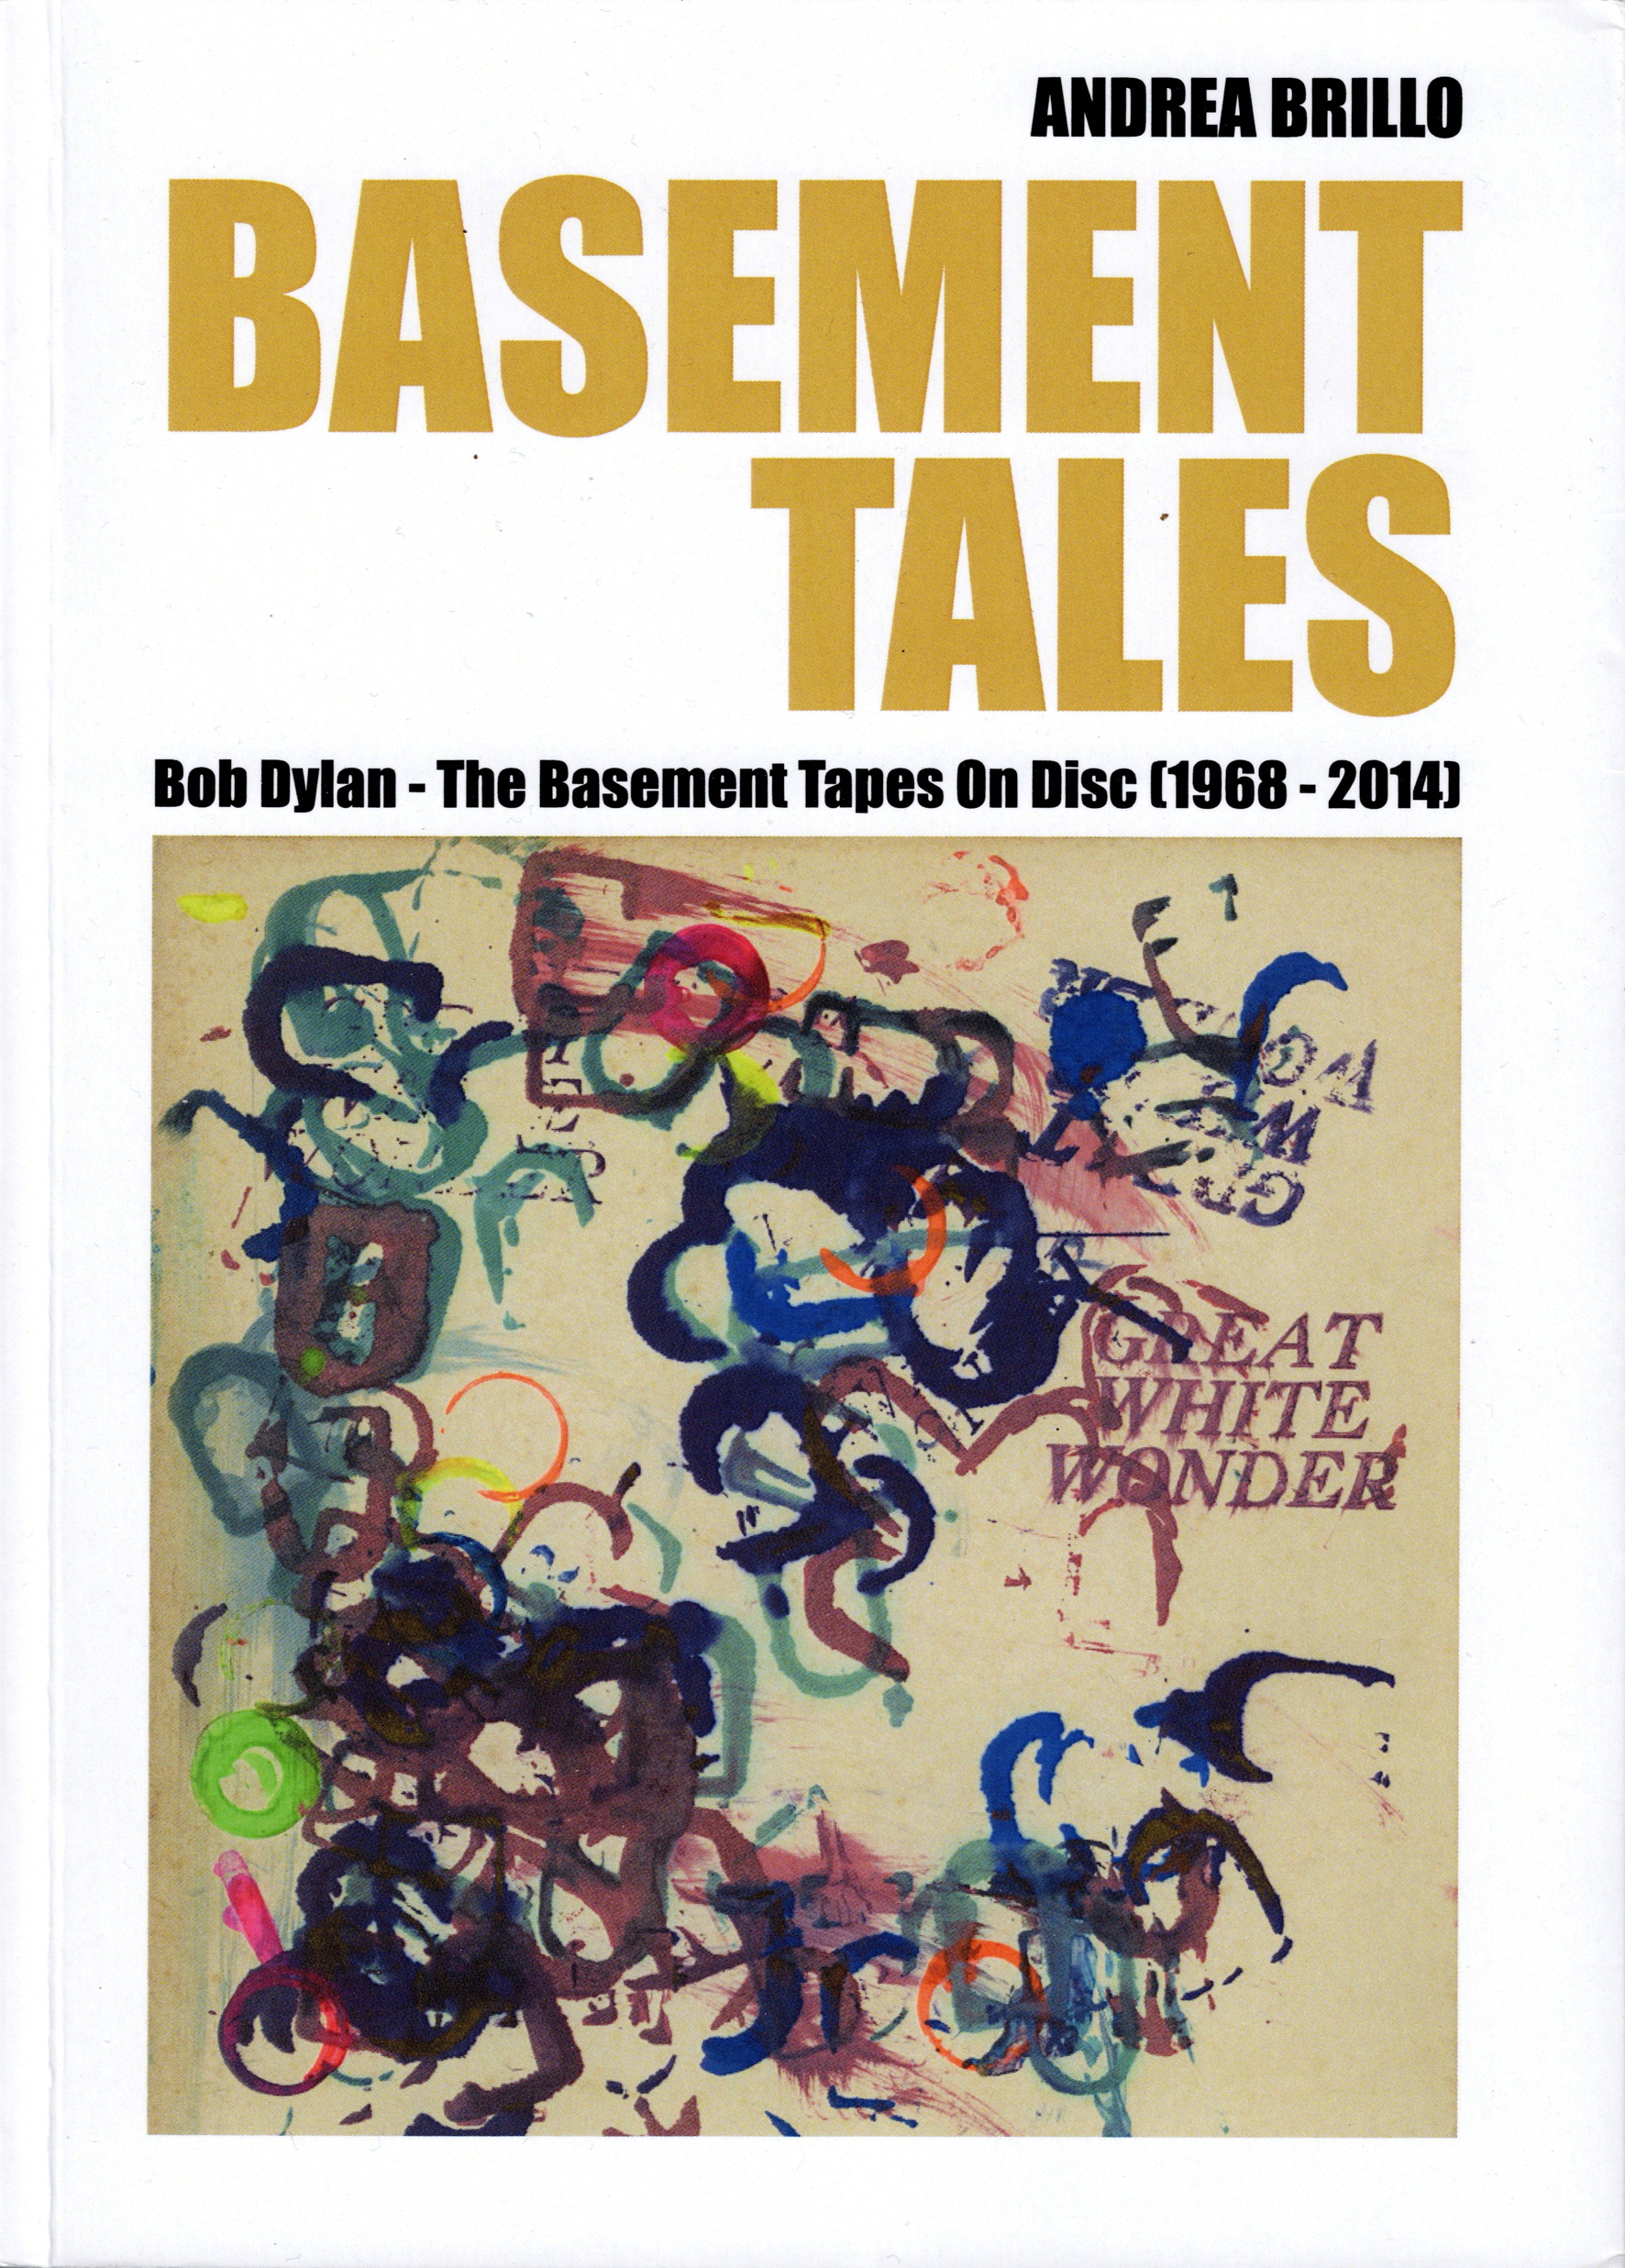 Indagine approfondita sulla session di Bob Dylan del 1967: Il libro “Basement Tales” di Andrea Brillo.